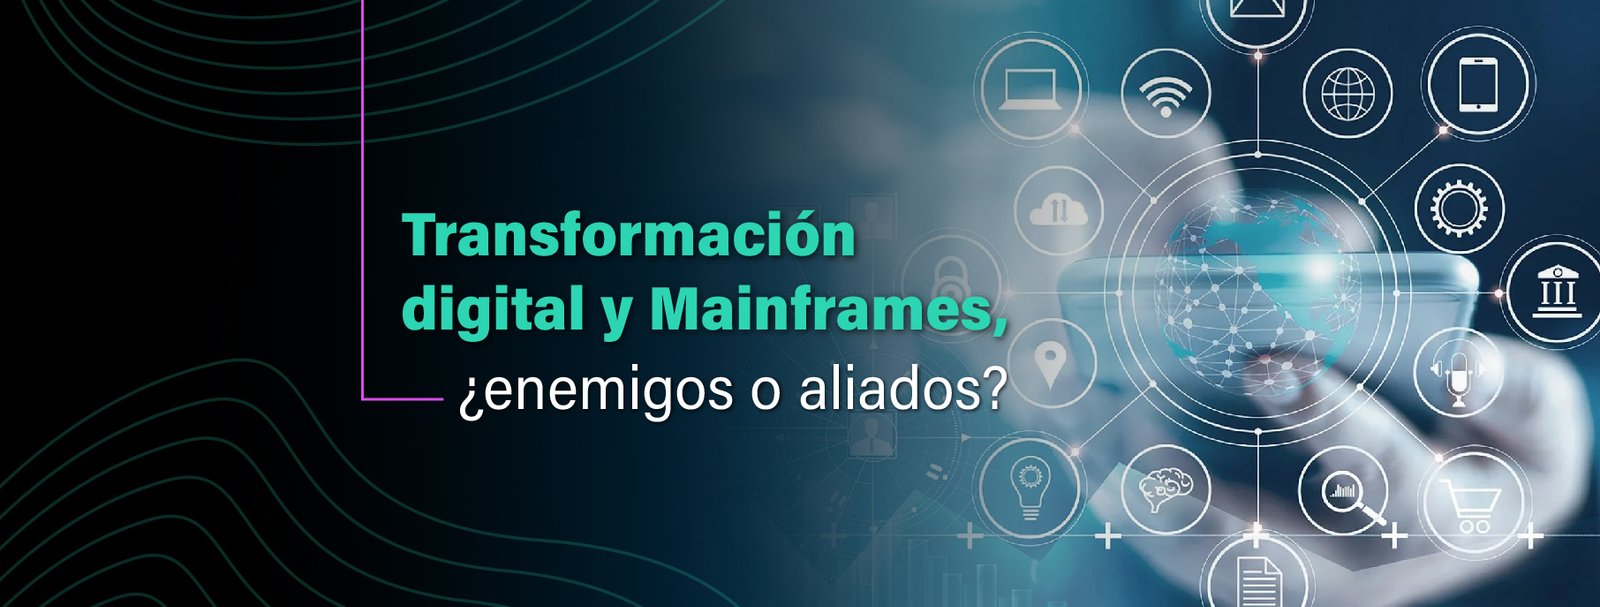 Transformación digital y Mainframes, ¿enemigos o aliados? Centro de excelencia en Mainframe IT Patagonia